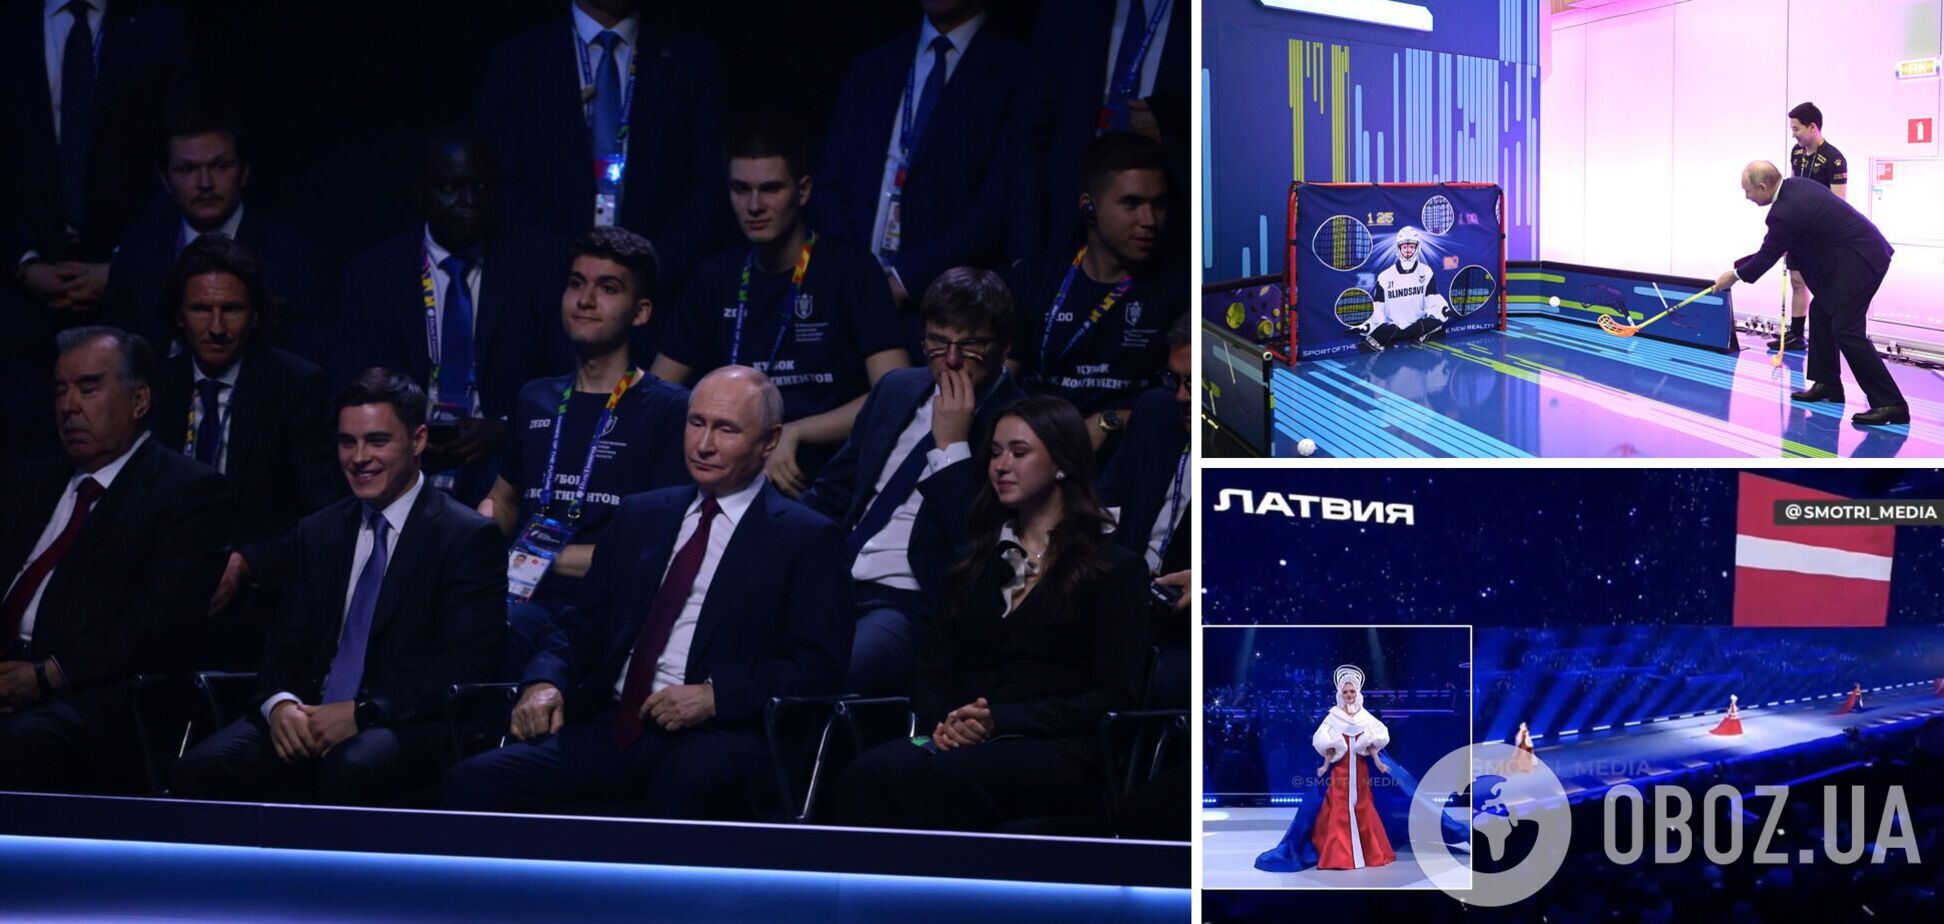 Іноземних спортсменів наздогнала карма за присутність разом із Путіним на 'Іграх майбутнього' у Казані